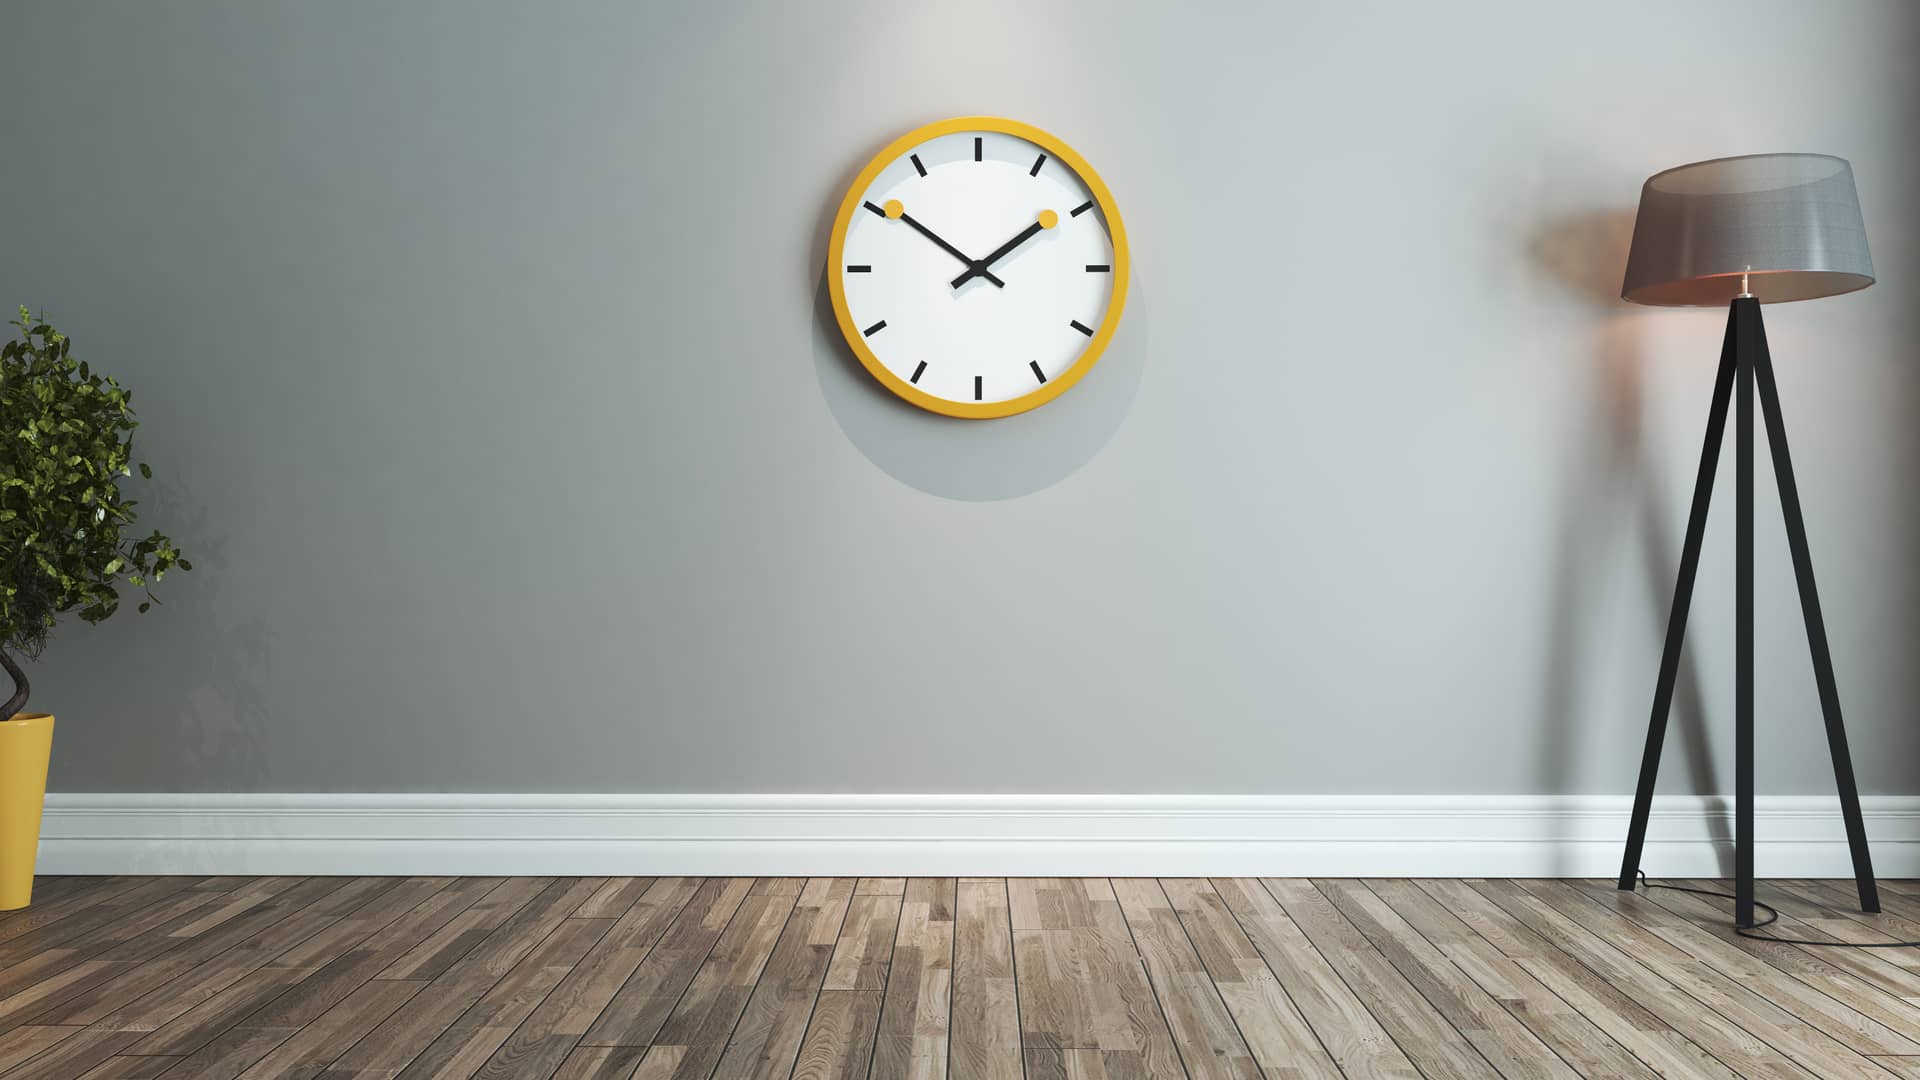 Reloj de pared símbolizando las tarifas de luz con discriminación en tres periodos